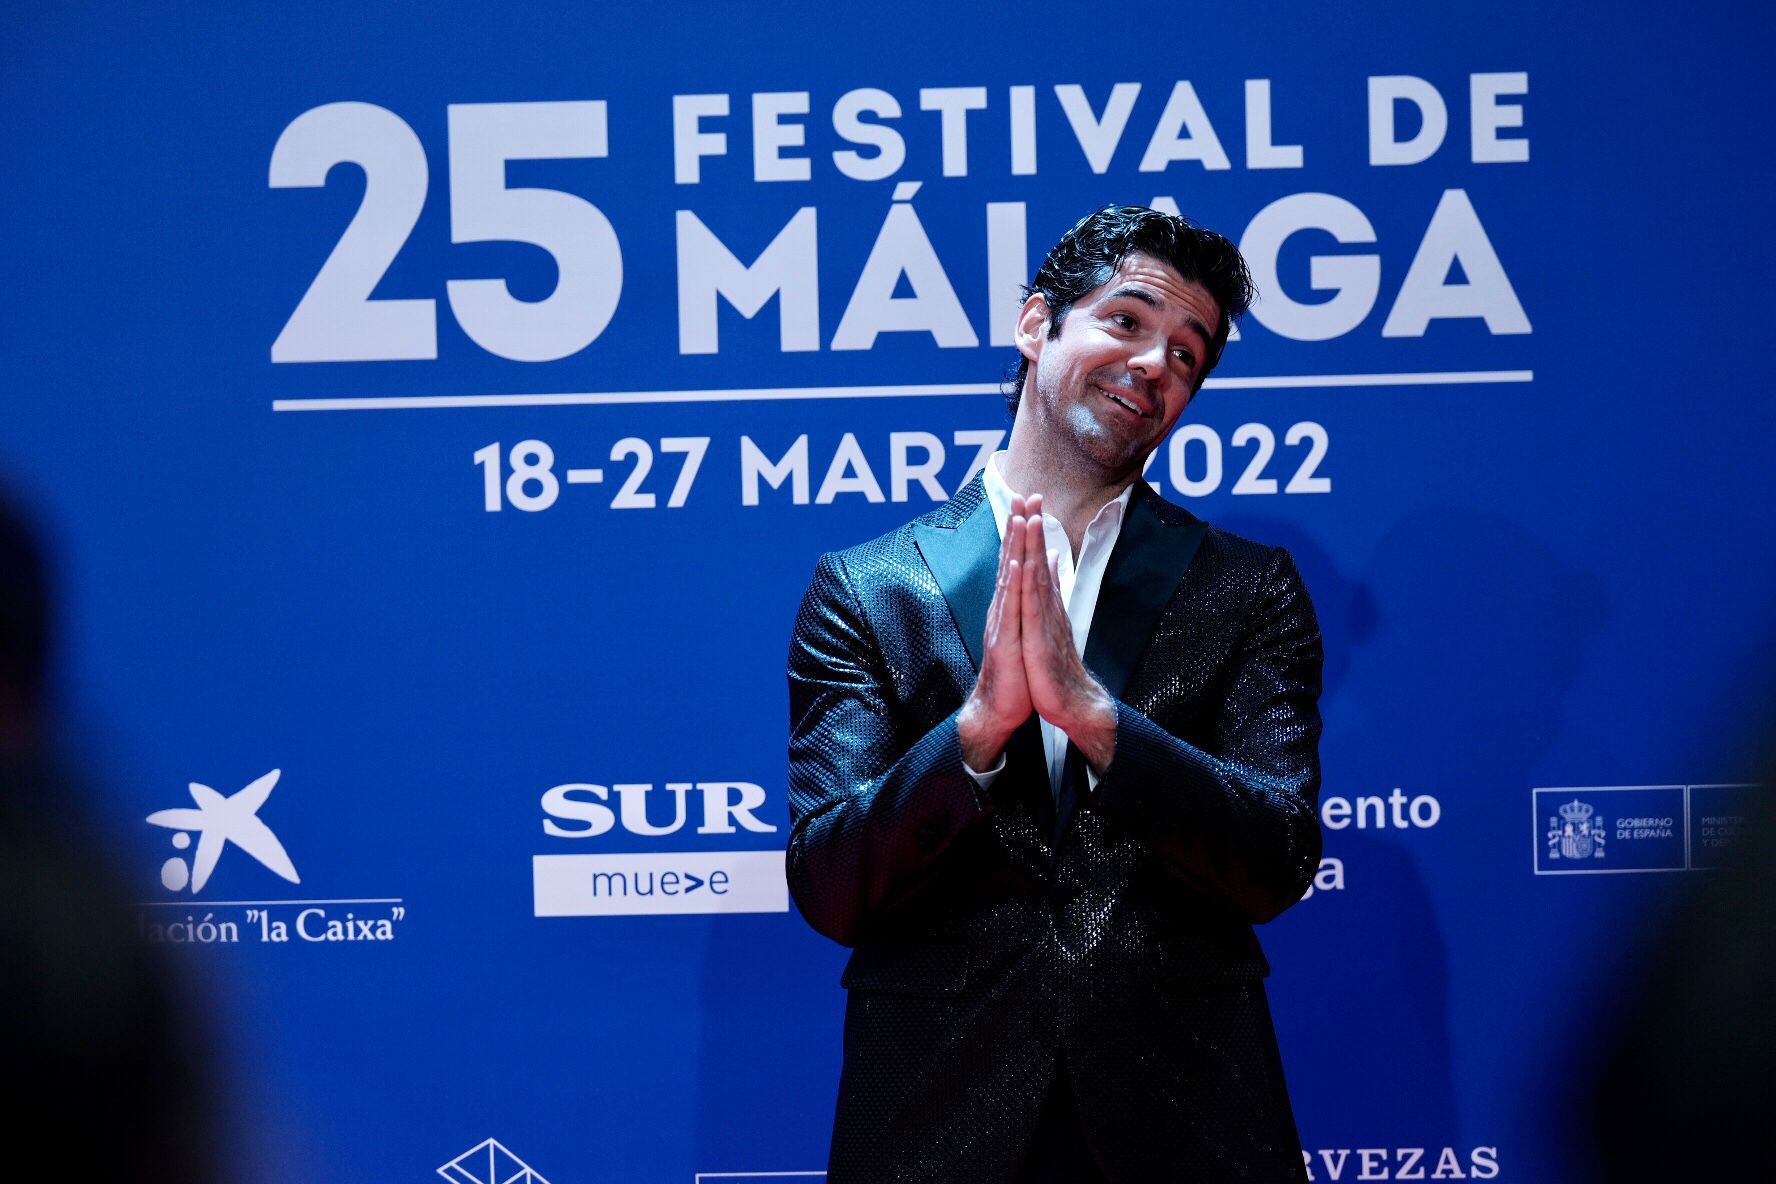 Las imágenes de la alfombra roja de la gala inaugural del Festival de Málaga